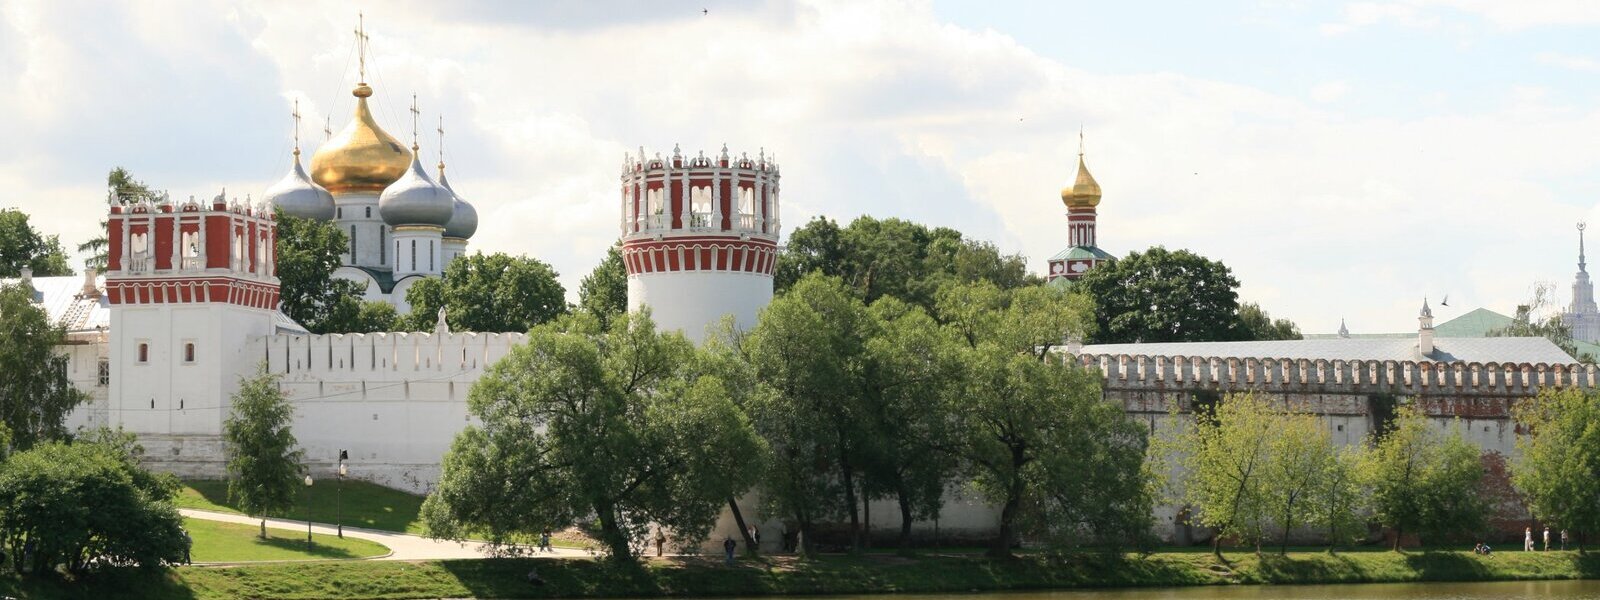 Экскурсии в Новодевичий монастырь